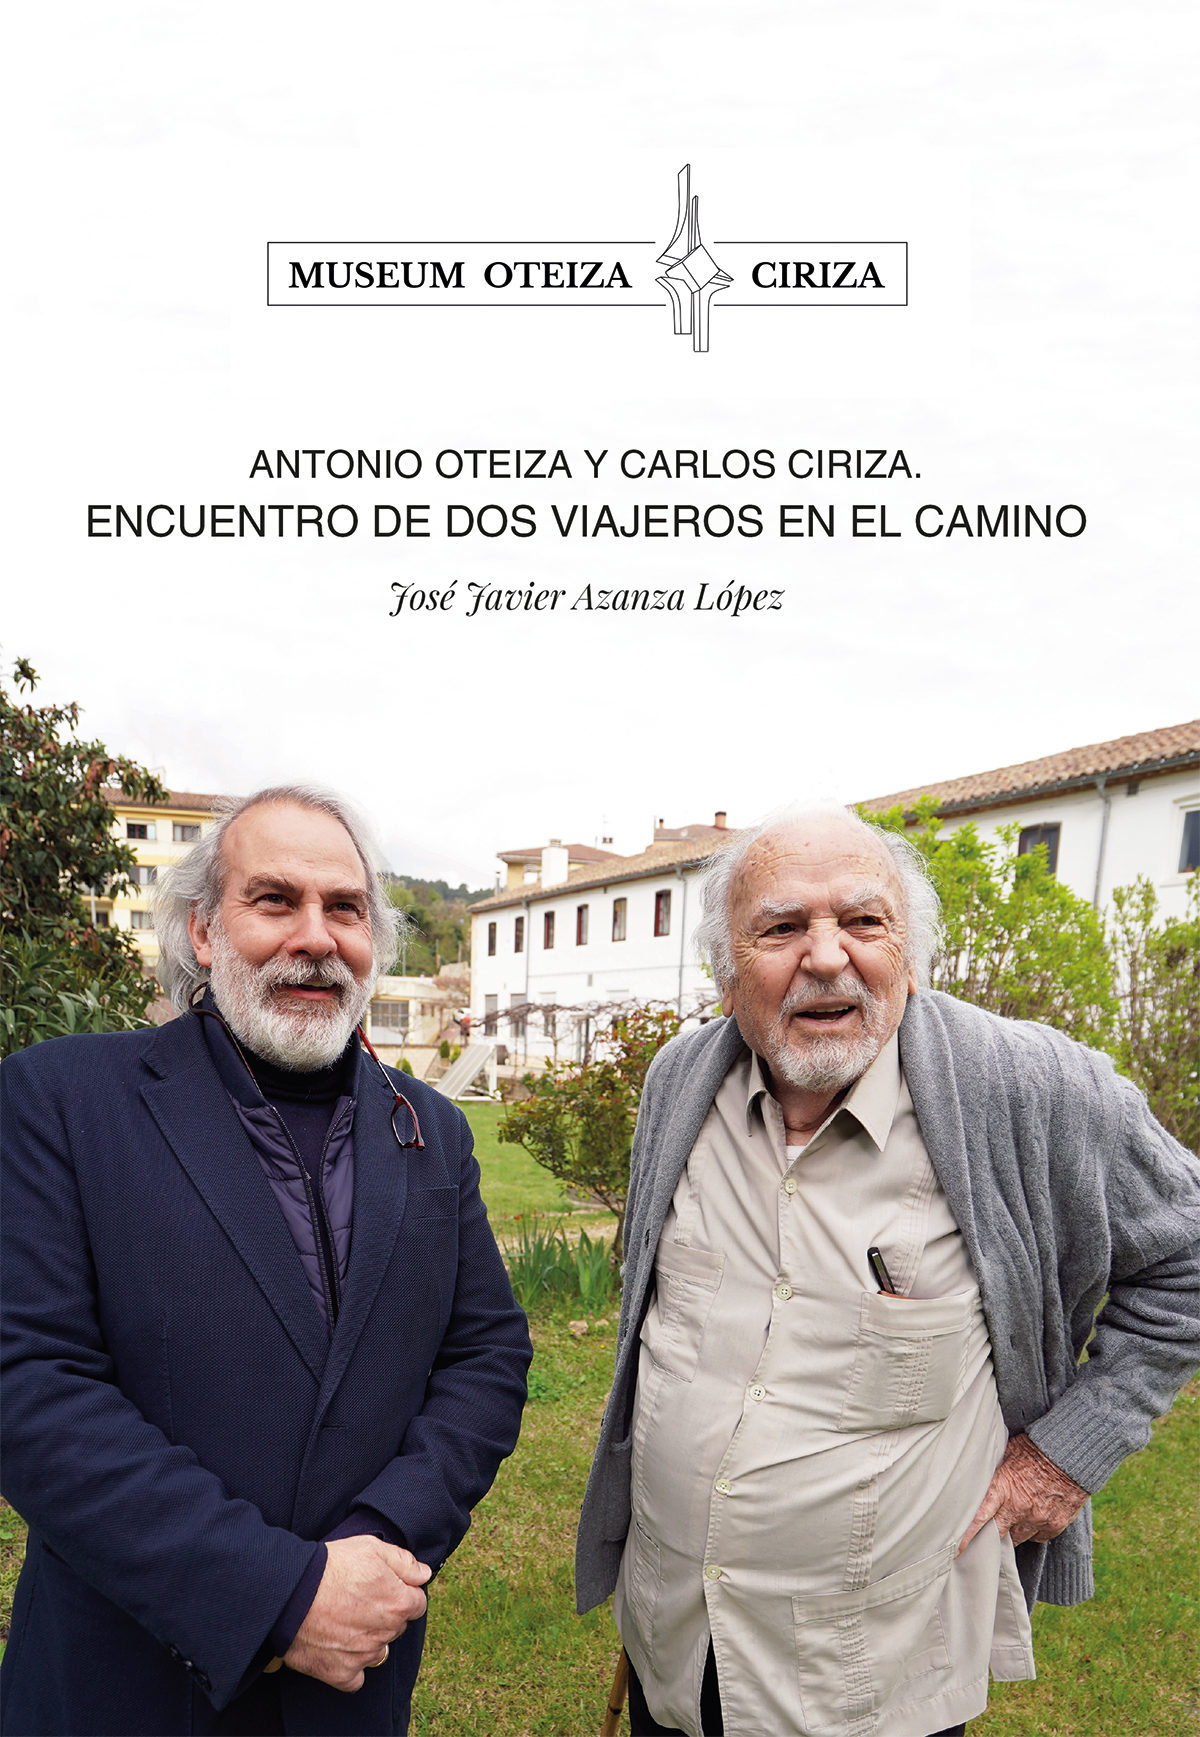 Antonio Oteiza y Carlos Ciriza. Encuentro de dos viajeros en el camino